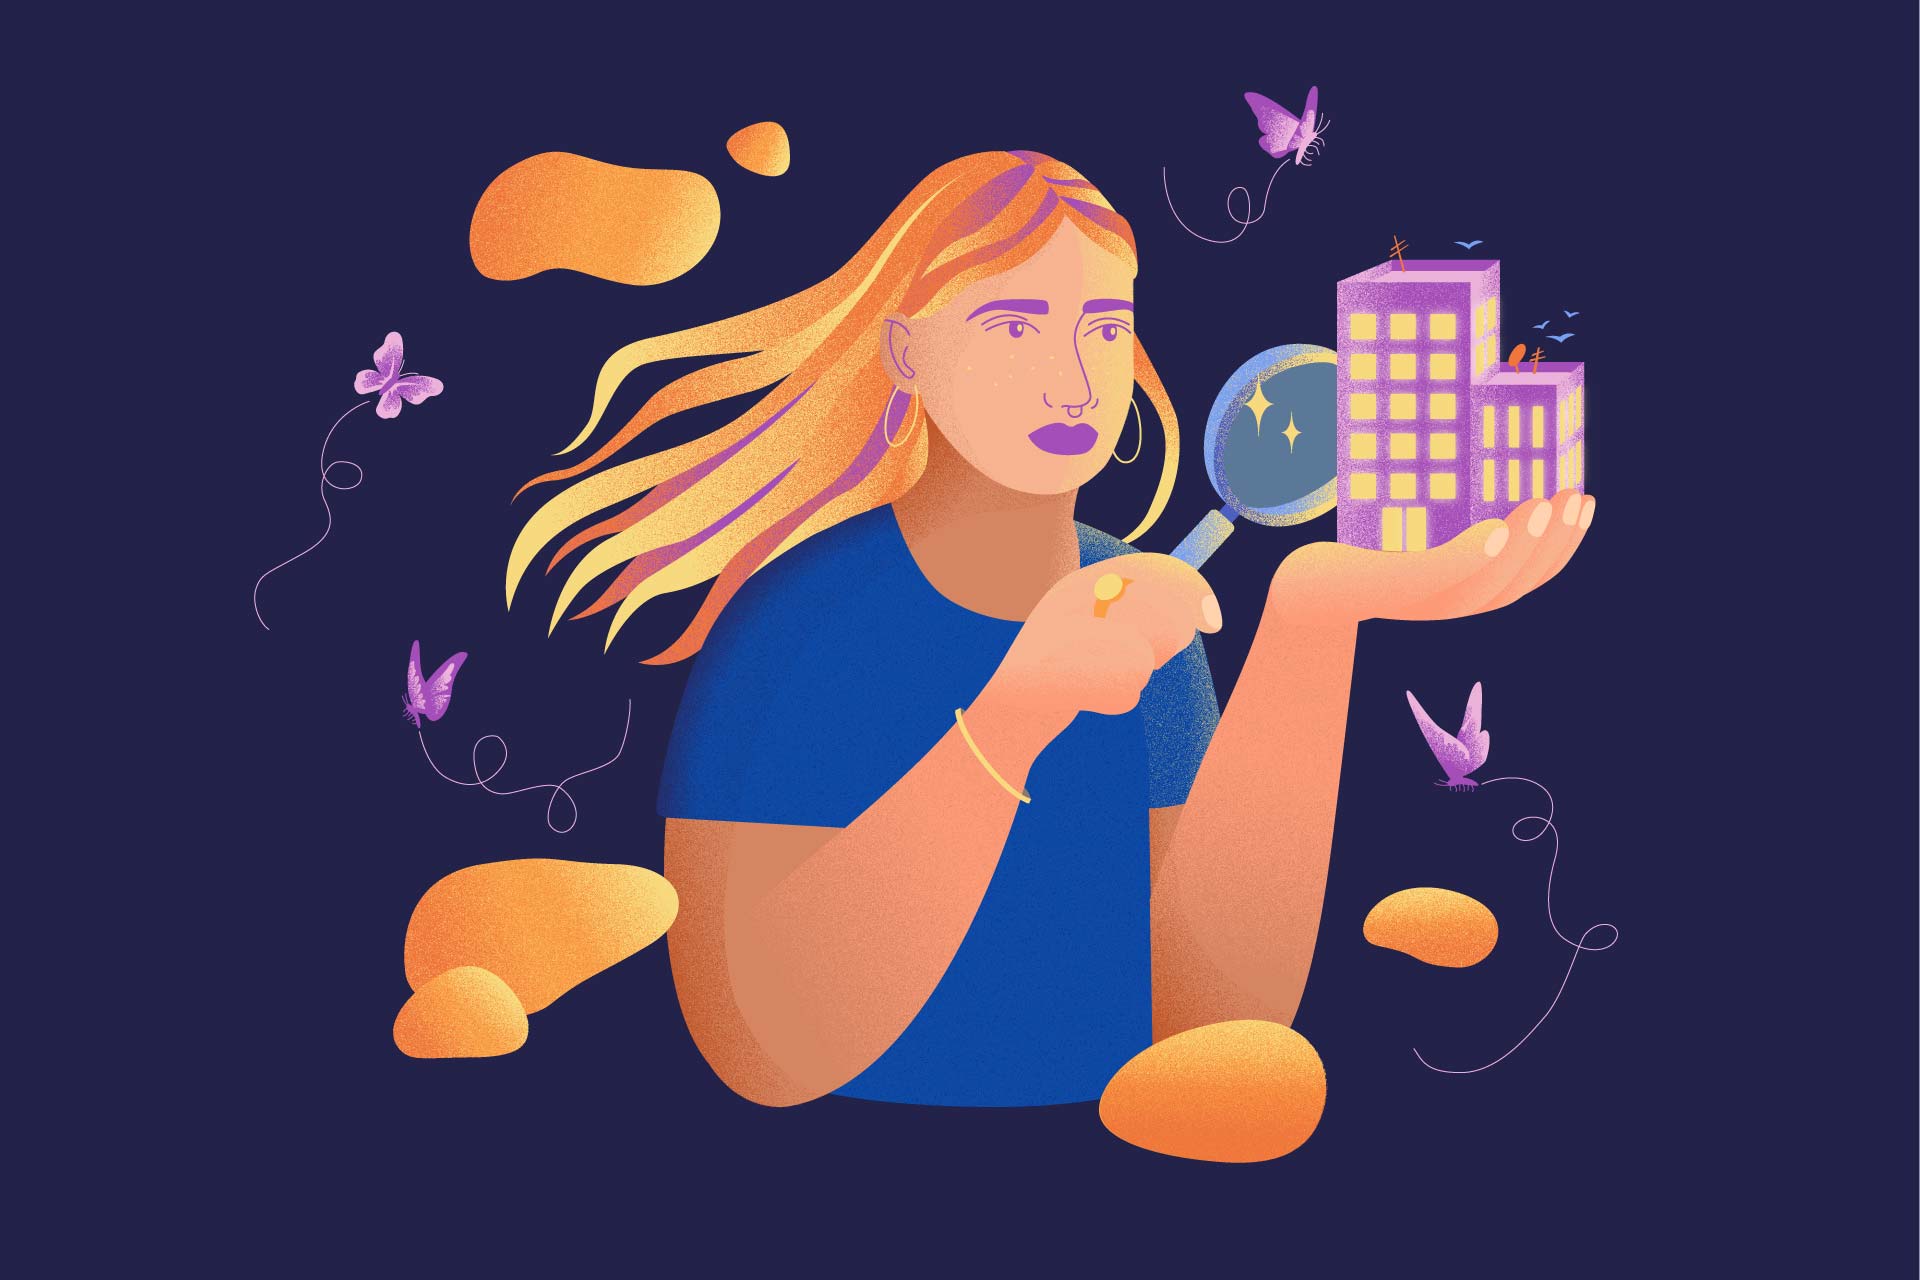 Illustration poétique inclusive pour l'égalité, une femme analyse à la loupe un immeuble entourée de papillons et étoiles